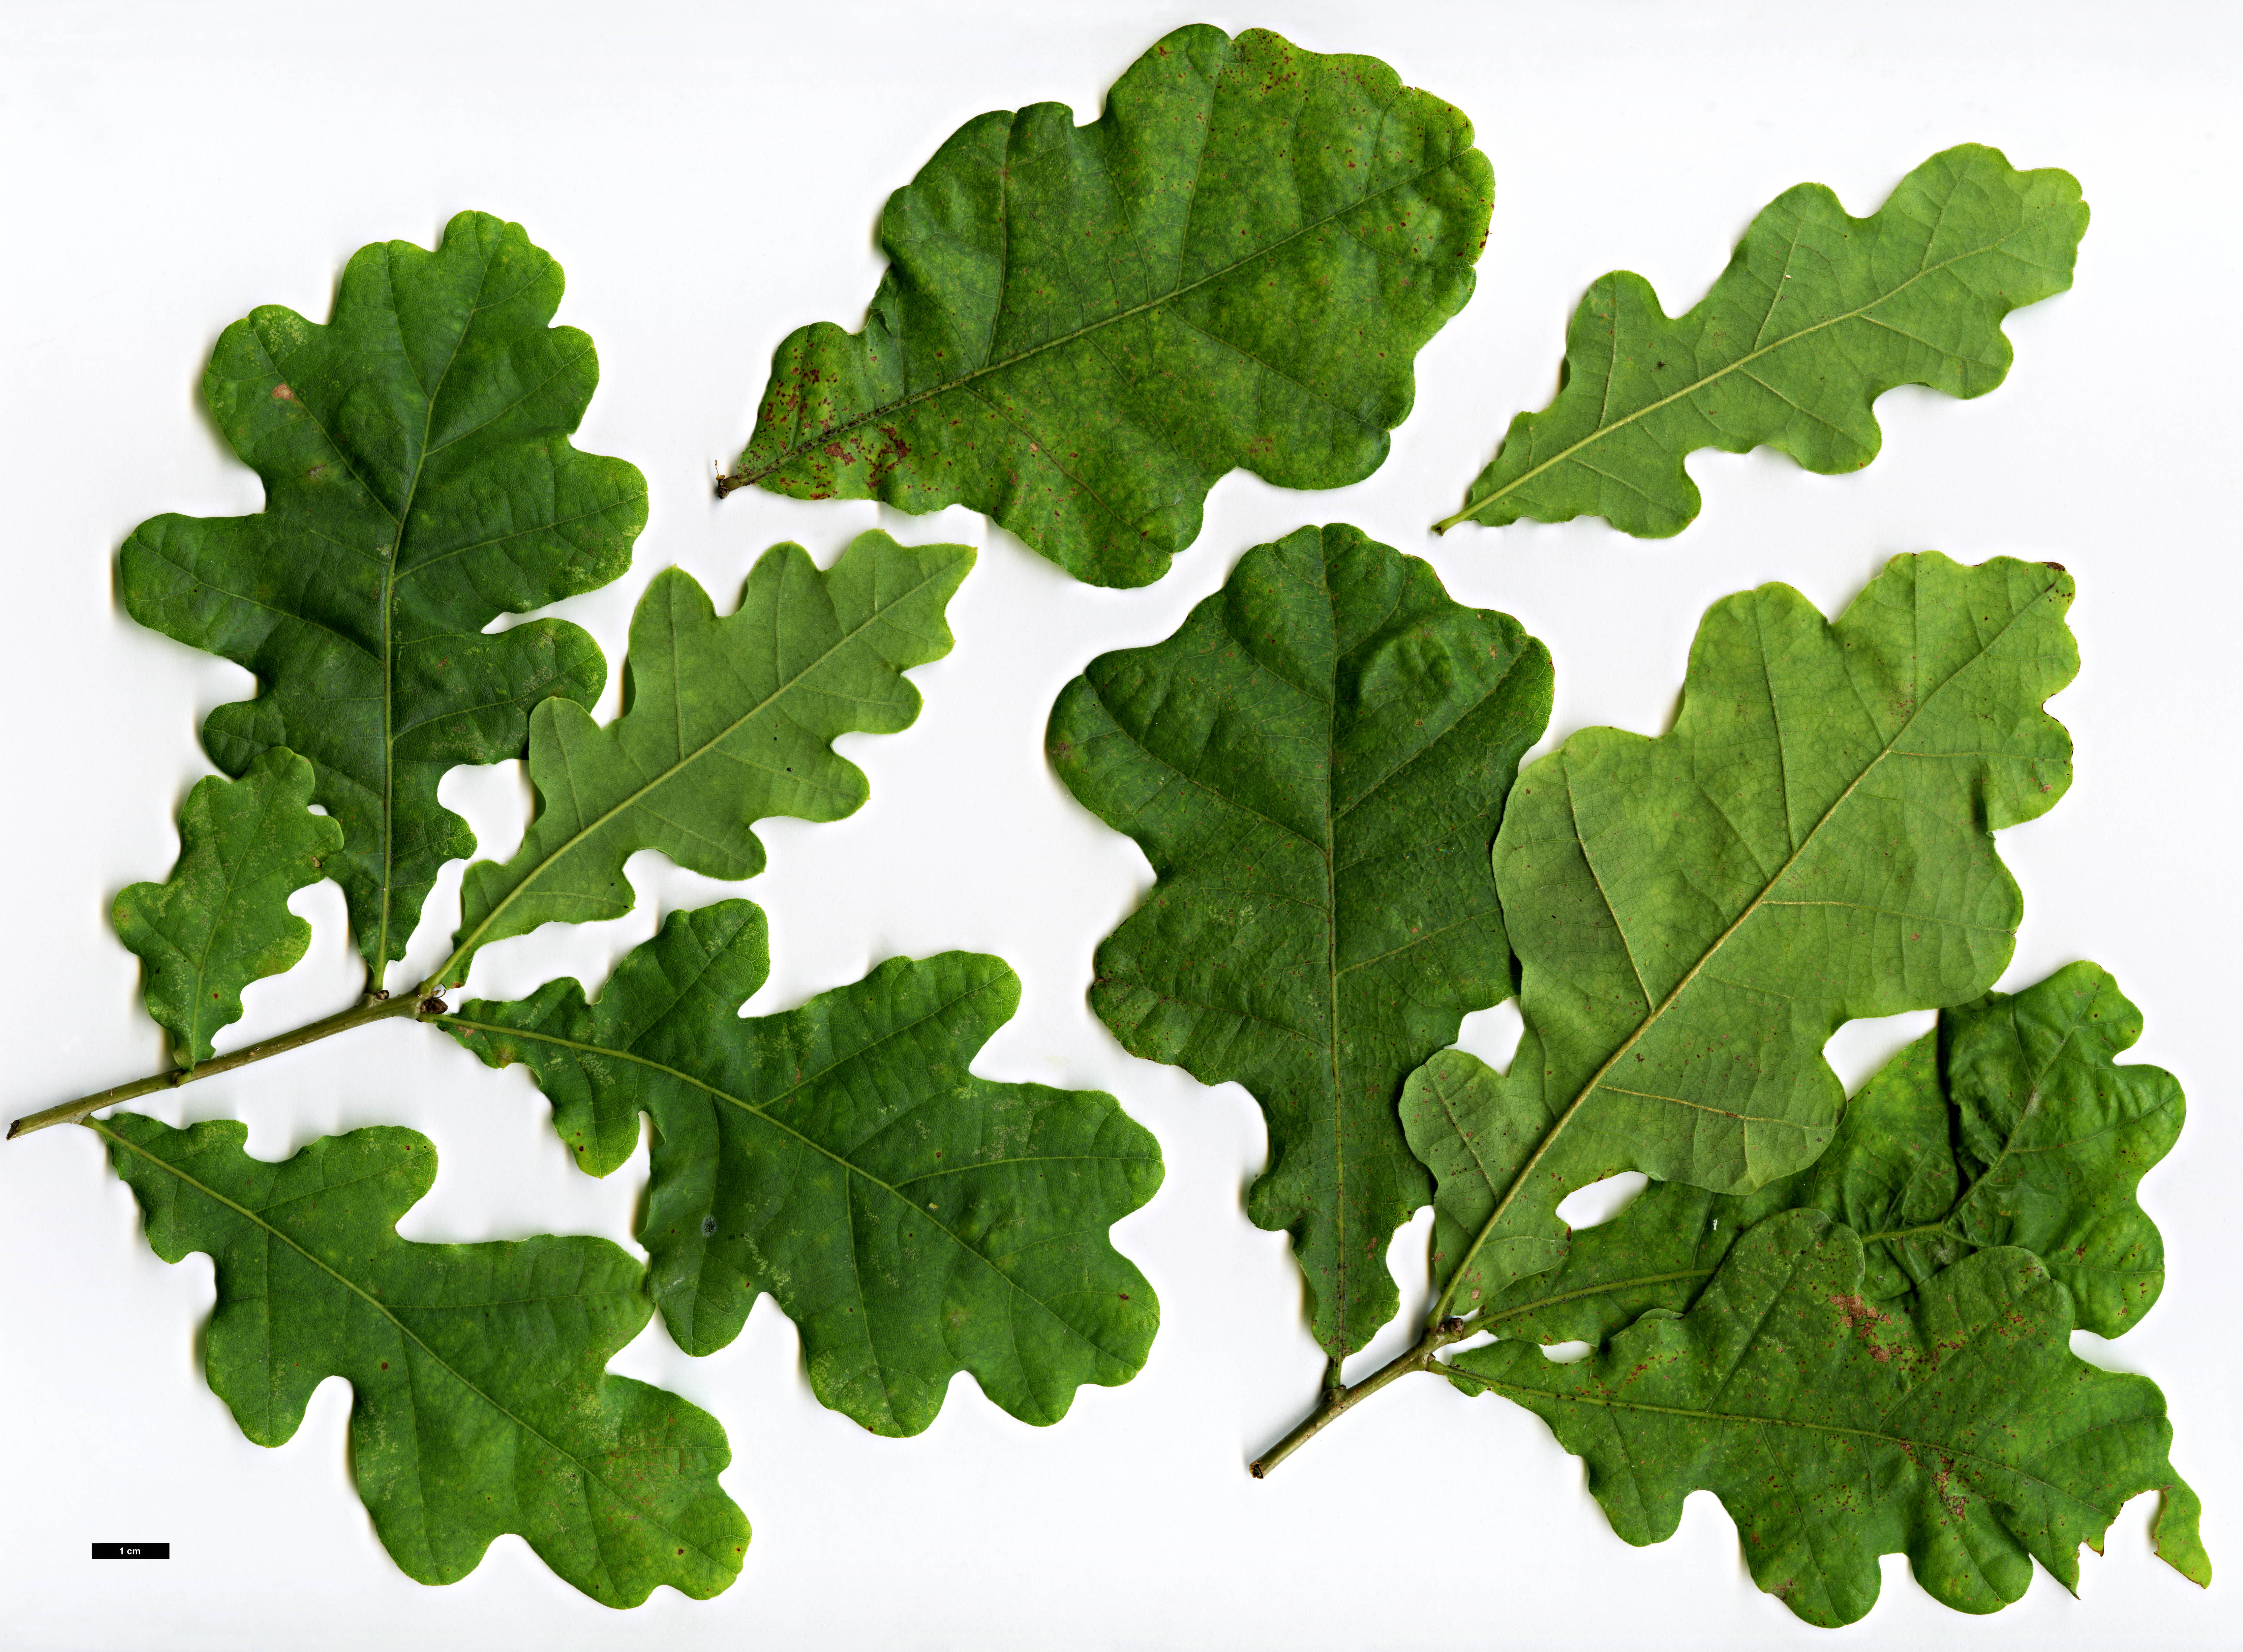 High resolution image: Family: Fagaceae - Genus: Quercus - Taxon: robur - SpeciesSub: Haas Group